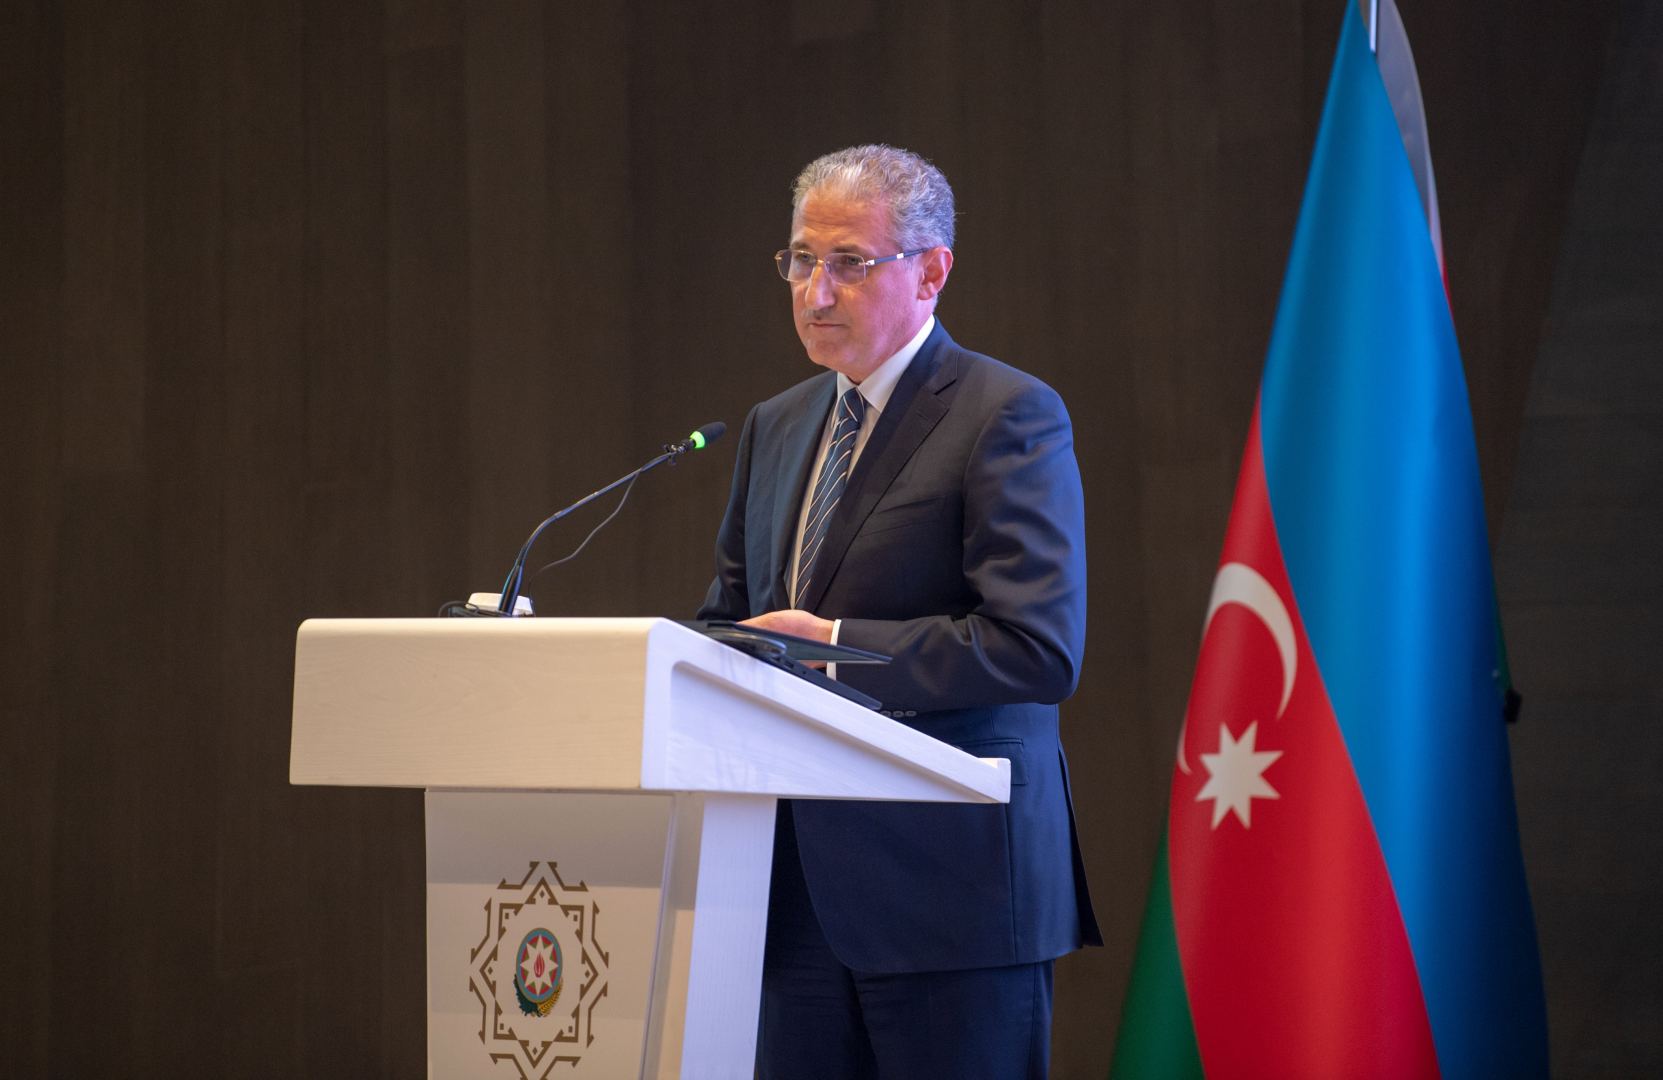 Азербайджан подписал контракты с турецкими компаниями по эксплуатации 3 рудных месторождений (ФОТО)